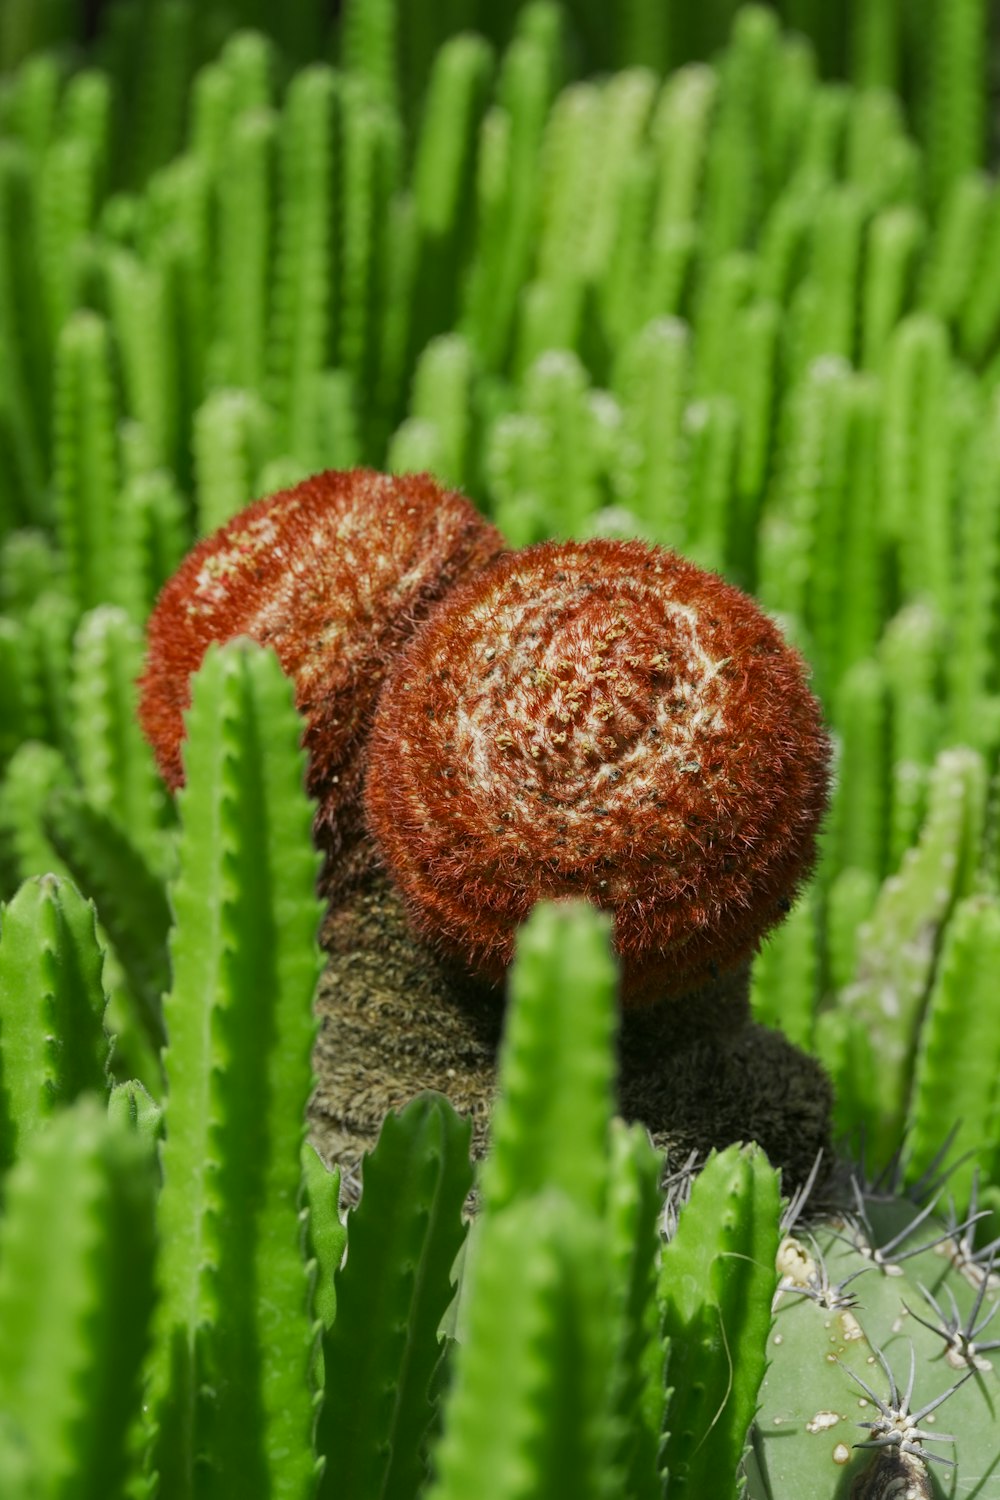 a mushroom growing in a field